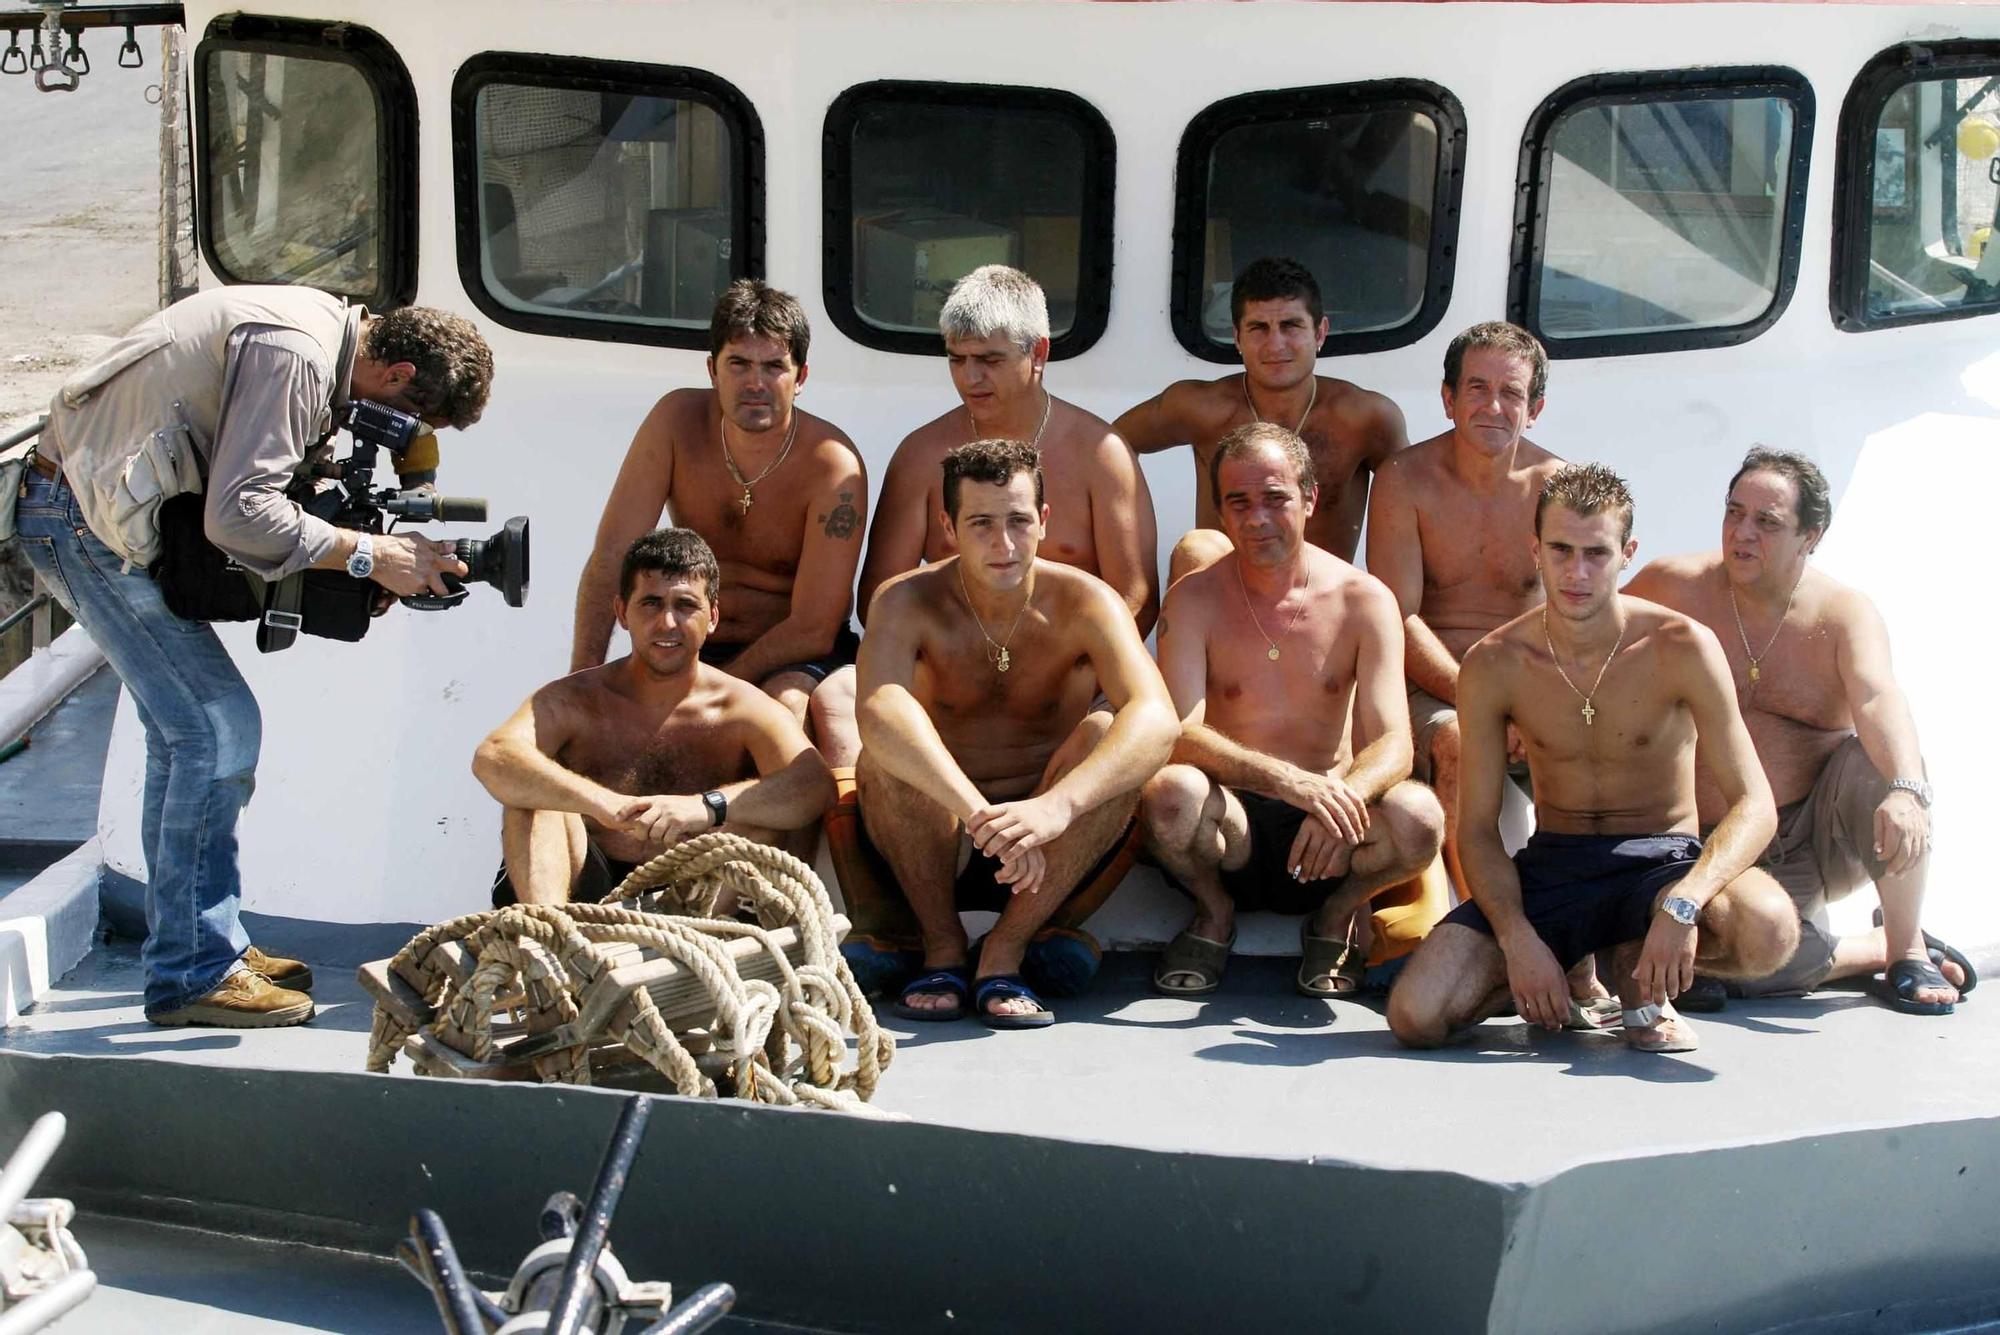 Así fue el desembarco en 2006 de los inmigrantes rescatados por la tripulación del pesquero "Francisco y Catalina" en Malta